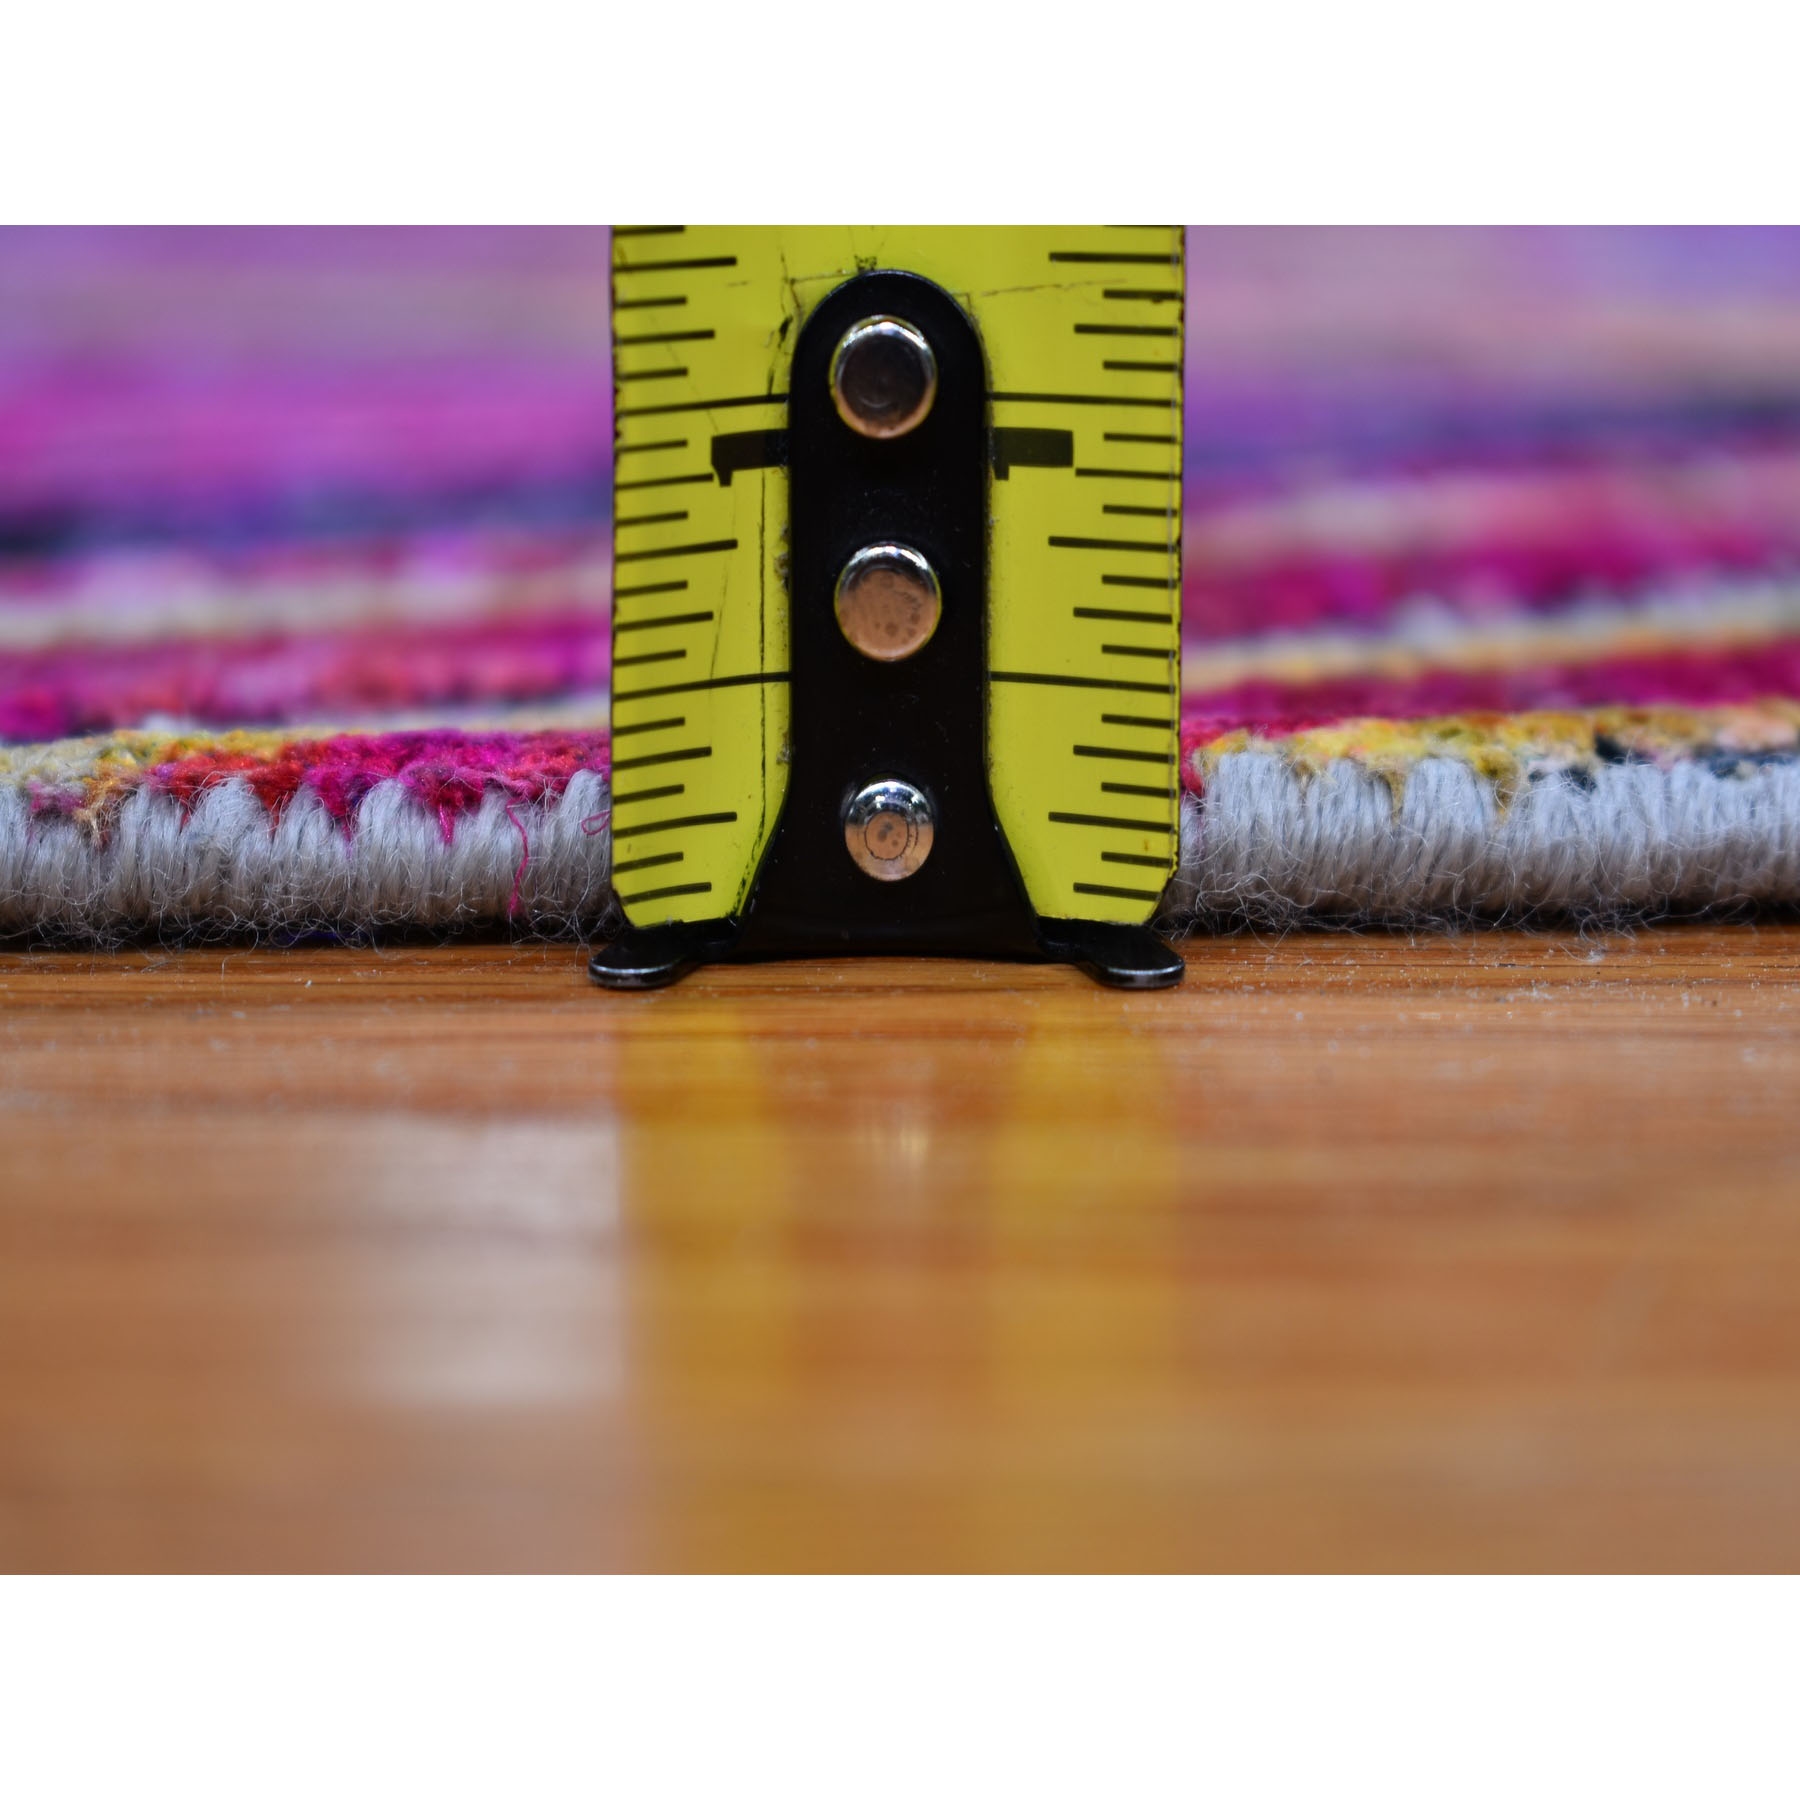 3-x10-2  Chevron Design Sari Silk With Textured Wool Hand Knotted Runner Oriental Rug 